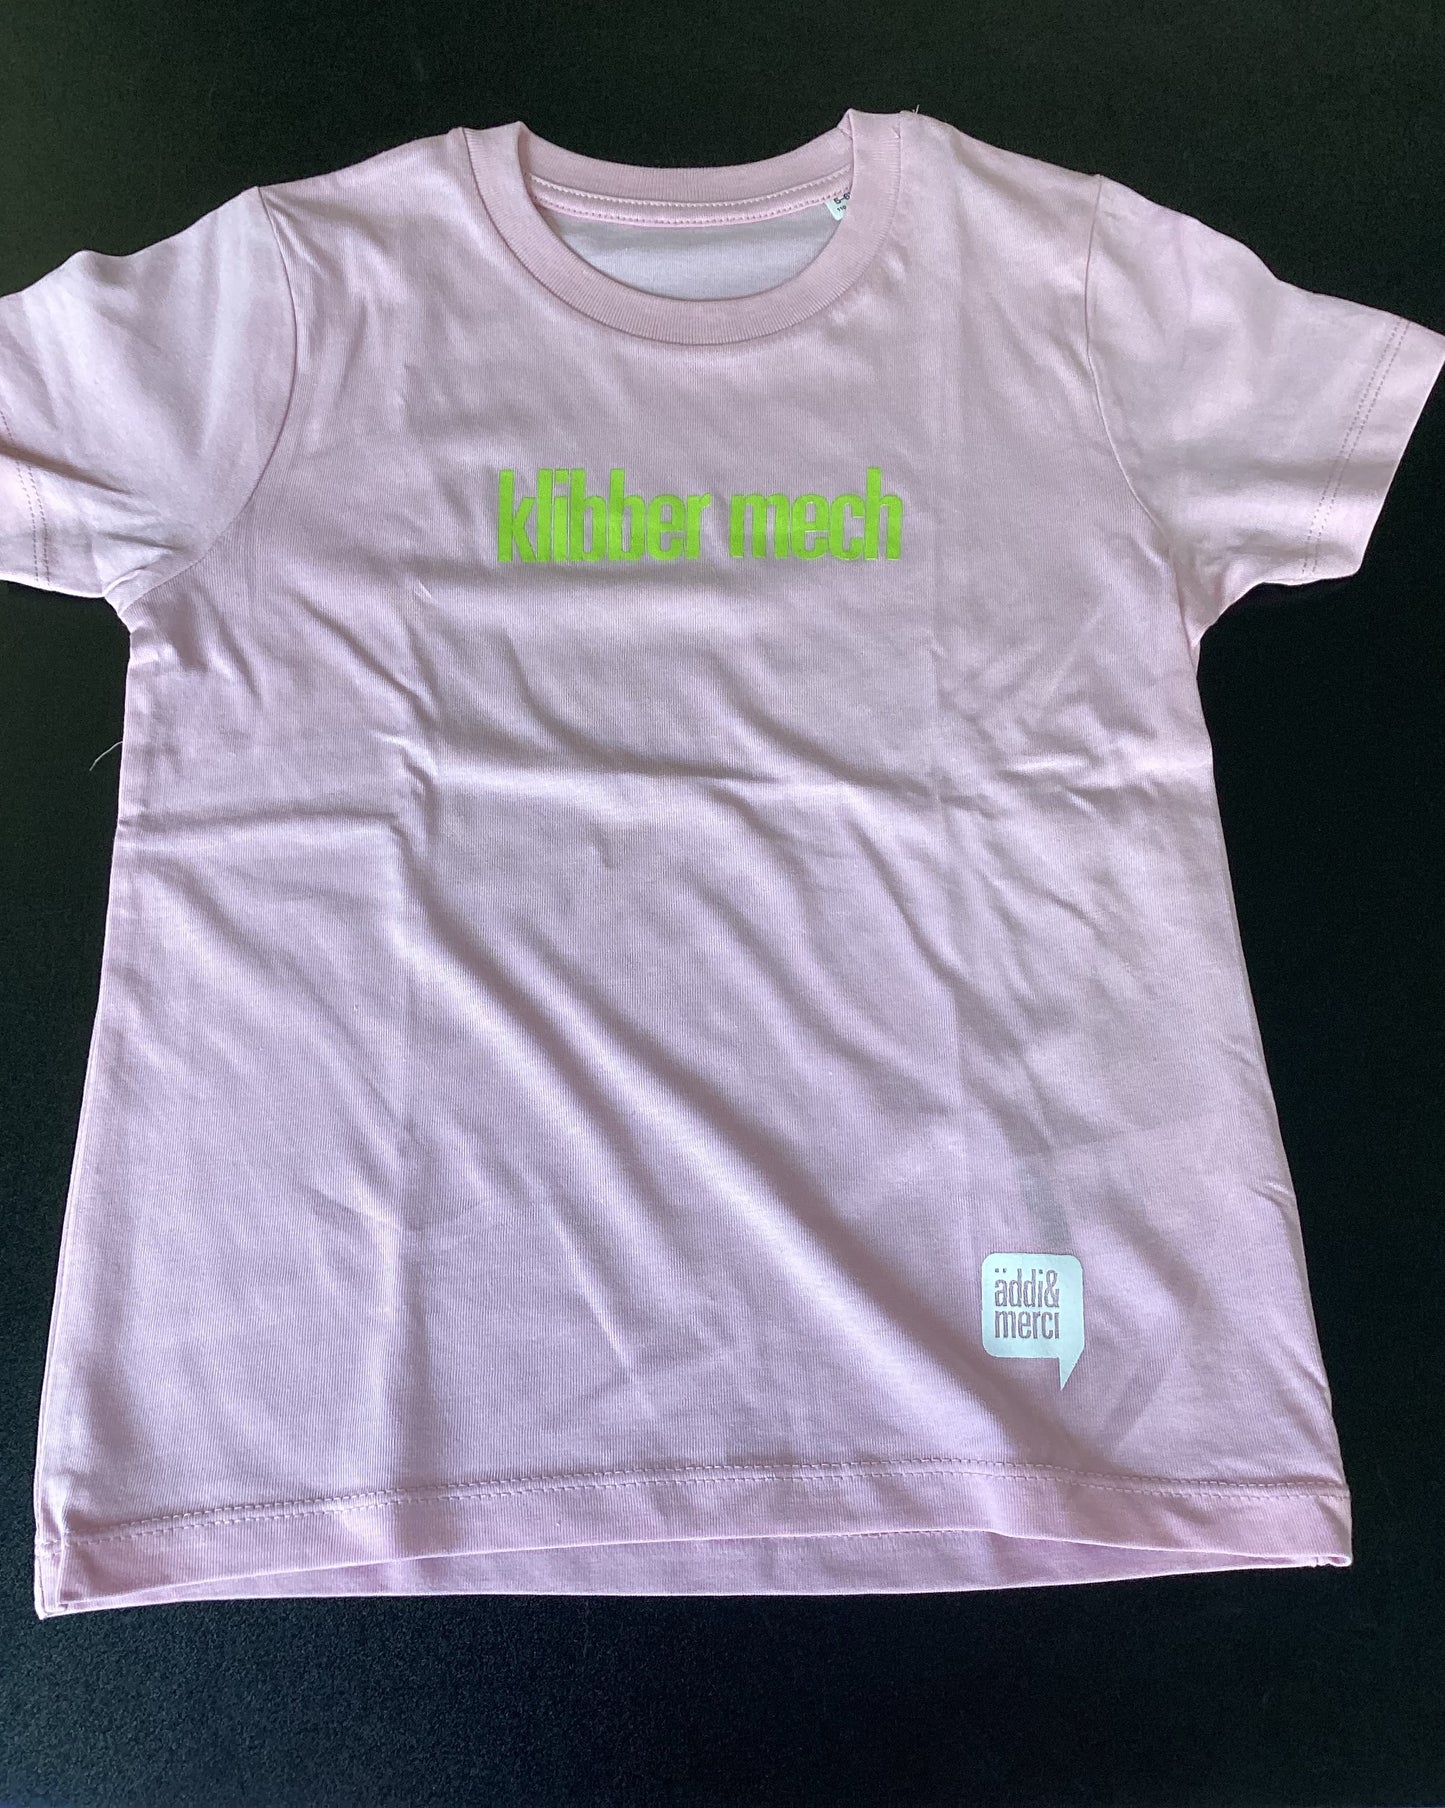 „Klibber mech" Kids T-Shirt